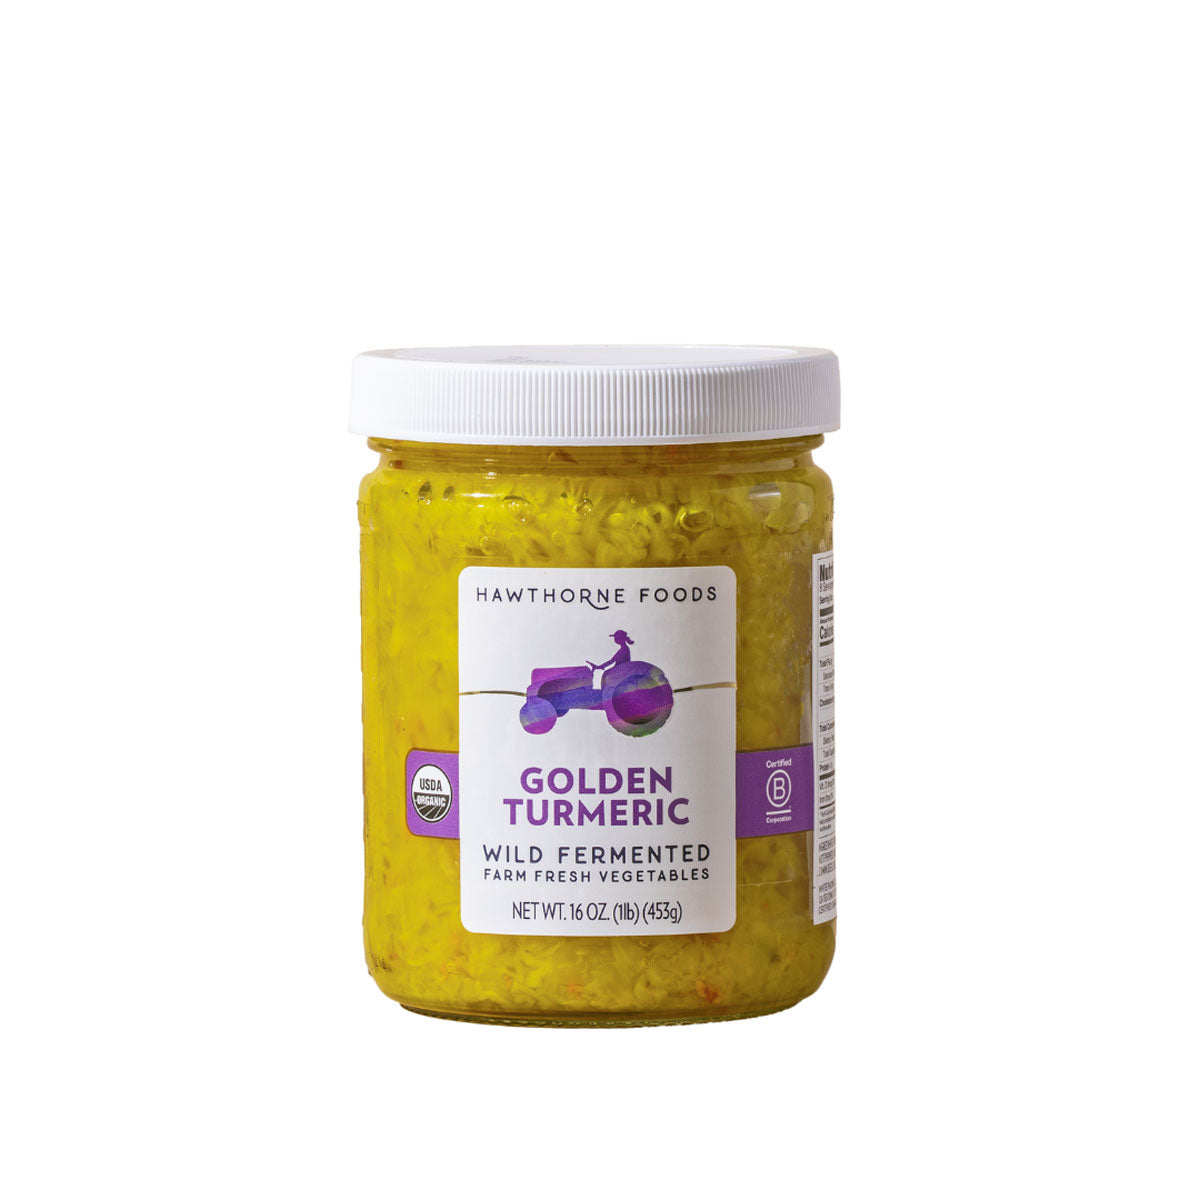 Hawthorne Foods Golden Turmeric Sauerkraut 16 OZ